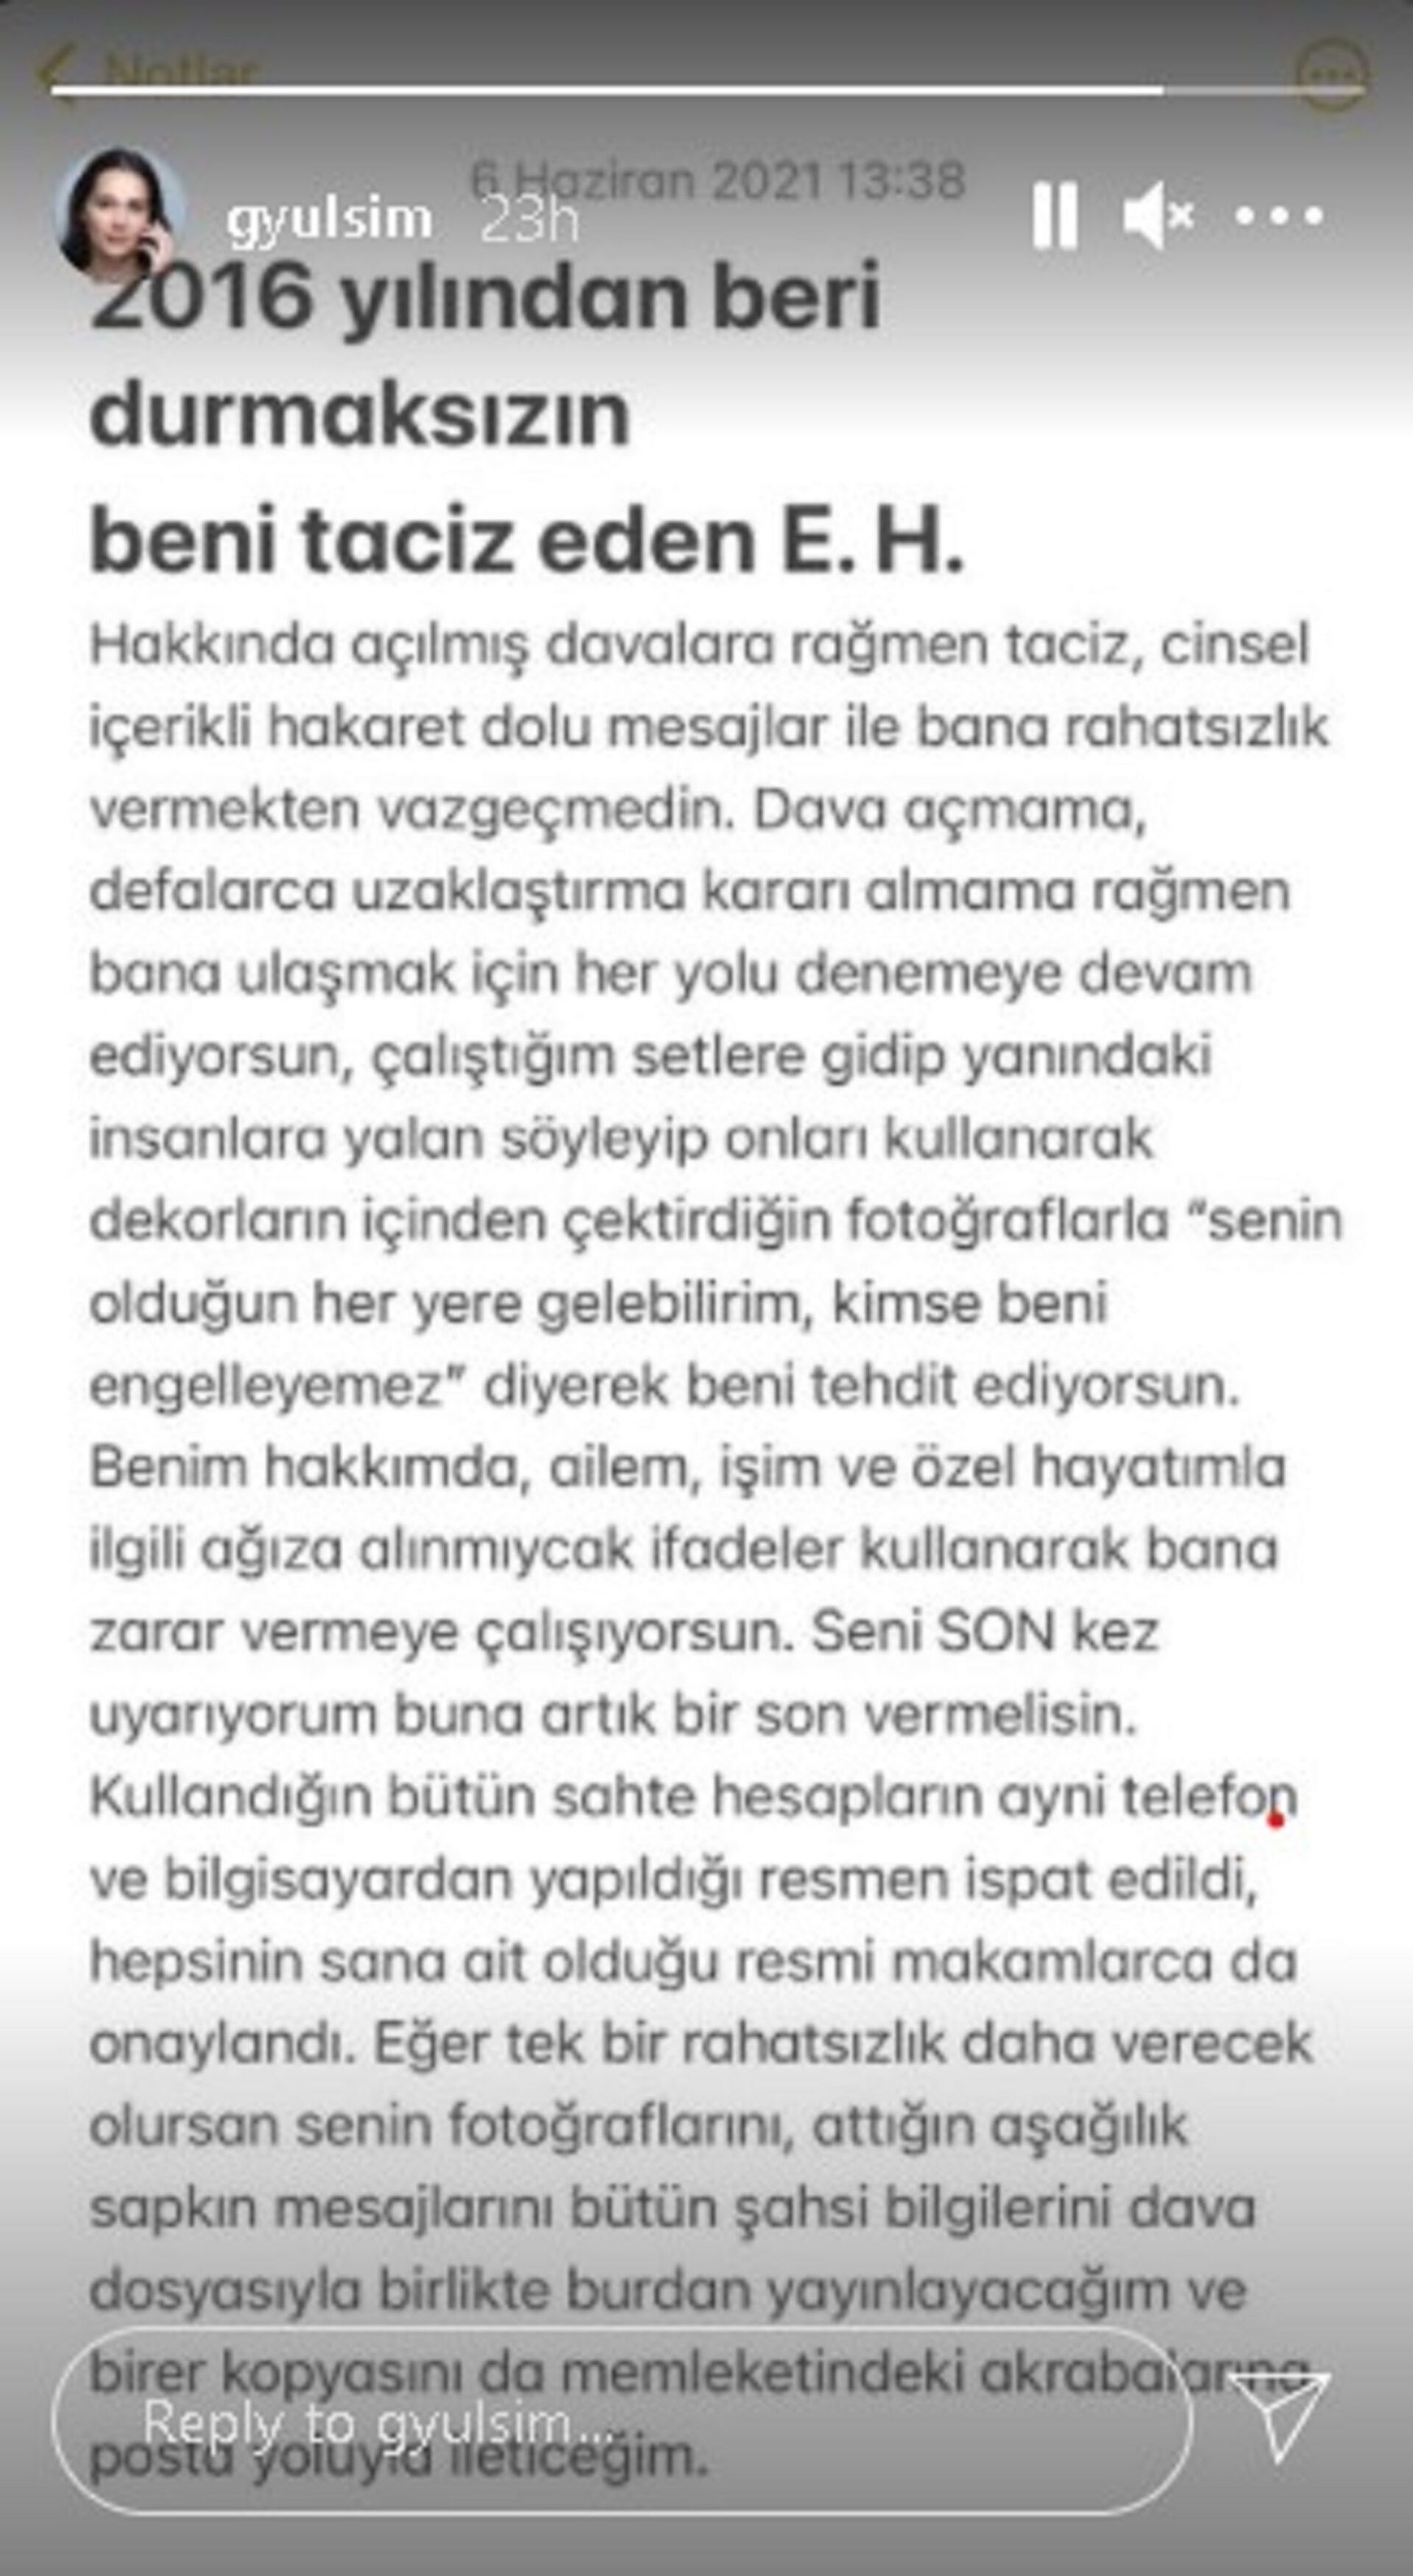 Gönül Dağı oyuncusu Gülsim Ali İlhan'ın yaptığı paylaşım - Sputnik Türkiye, 1920, 10.08.2021